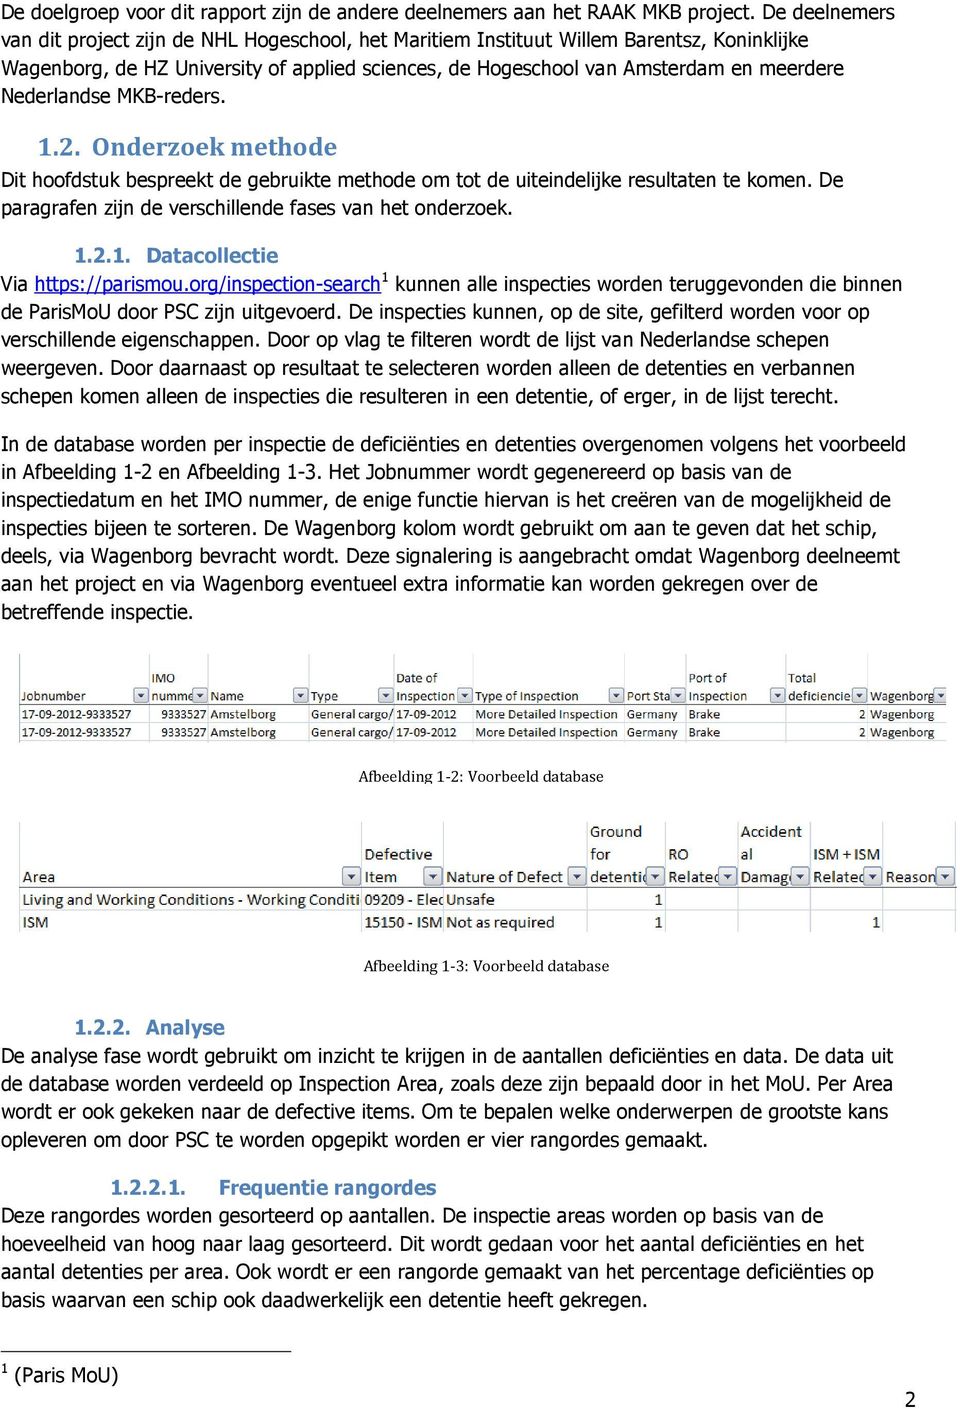 Nederlandse MKB-reders..2. Onderzoek methode Dit hoofdstuk bespreekt de gebruikte methode om tot de uiteindelijke resultaten te komen. De paragrafen zijn de verschillende fases van het onderzoek..2.. Datacollectie Via https://parismou.